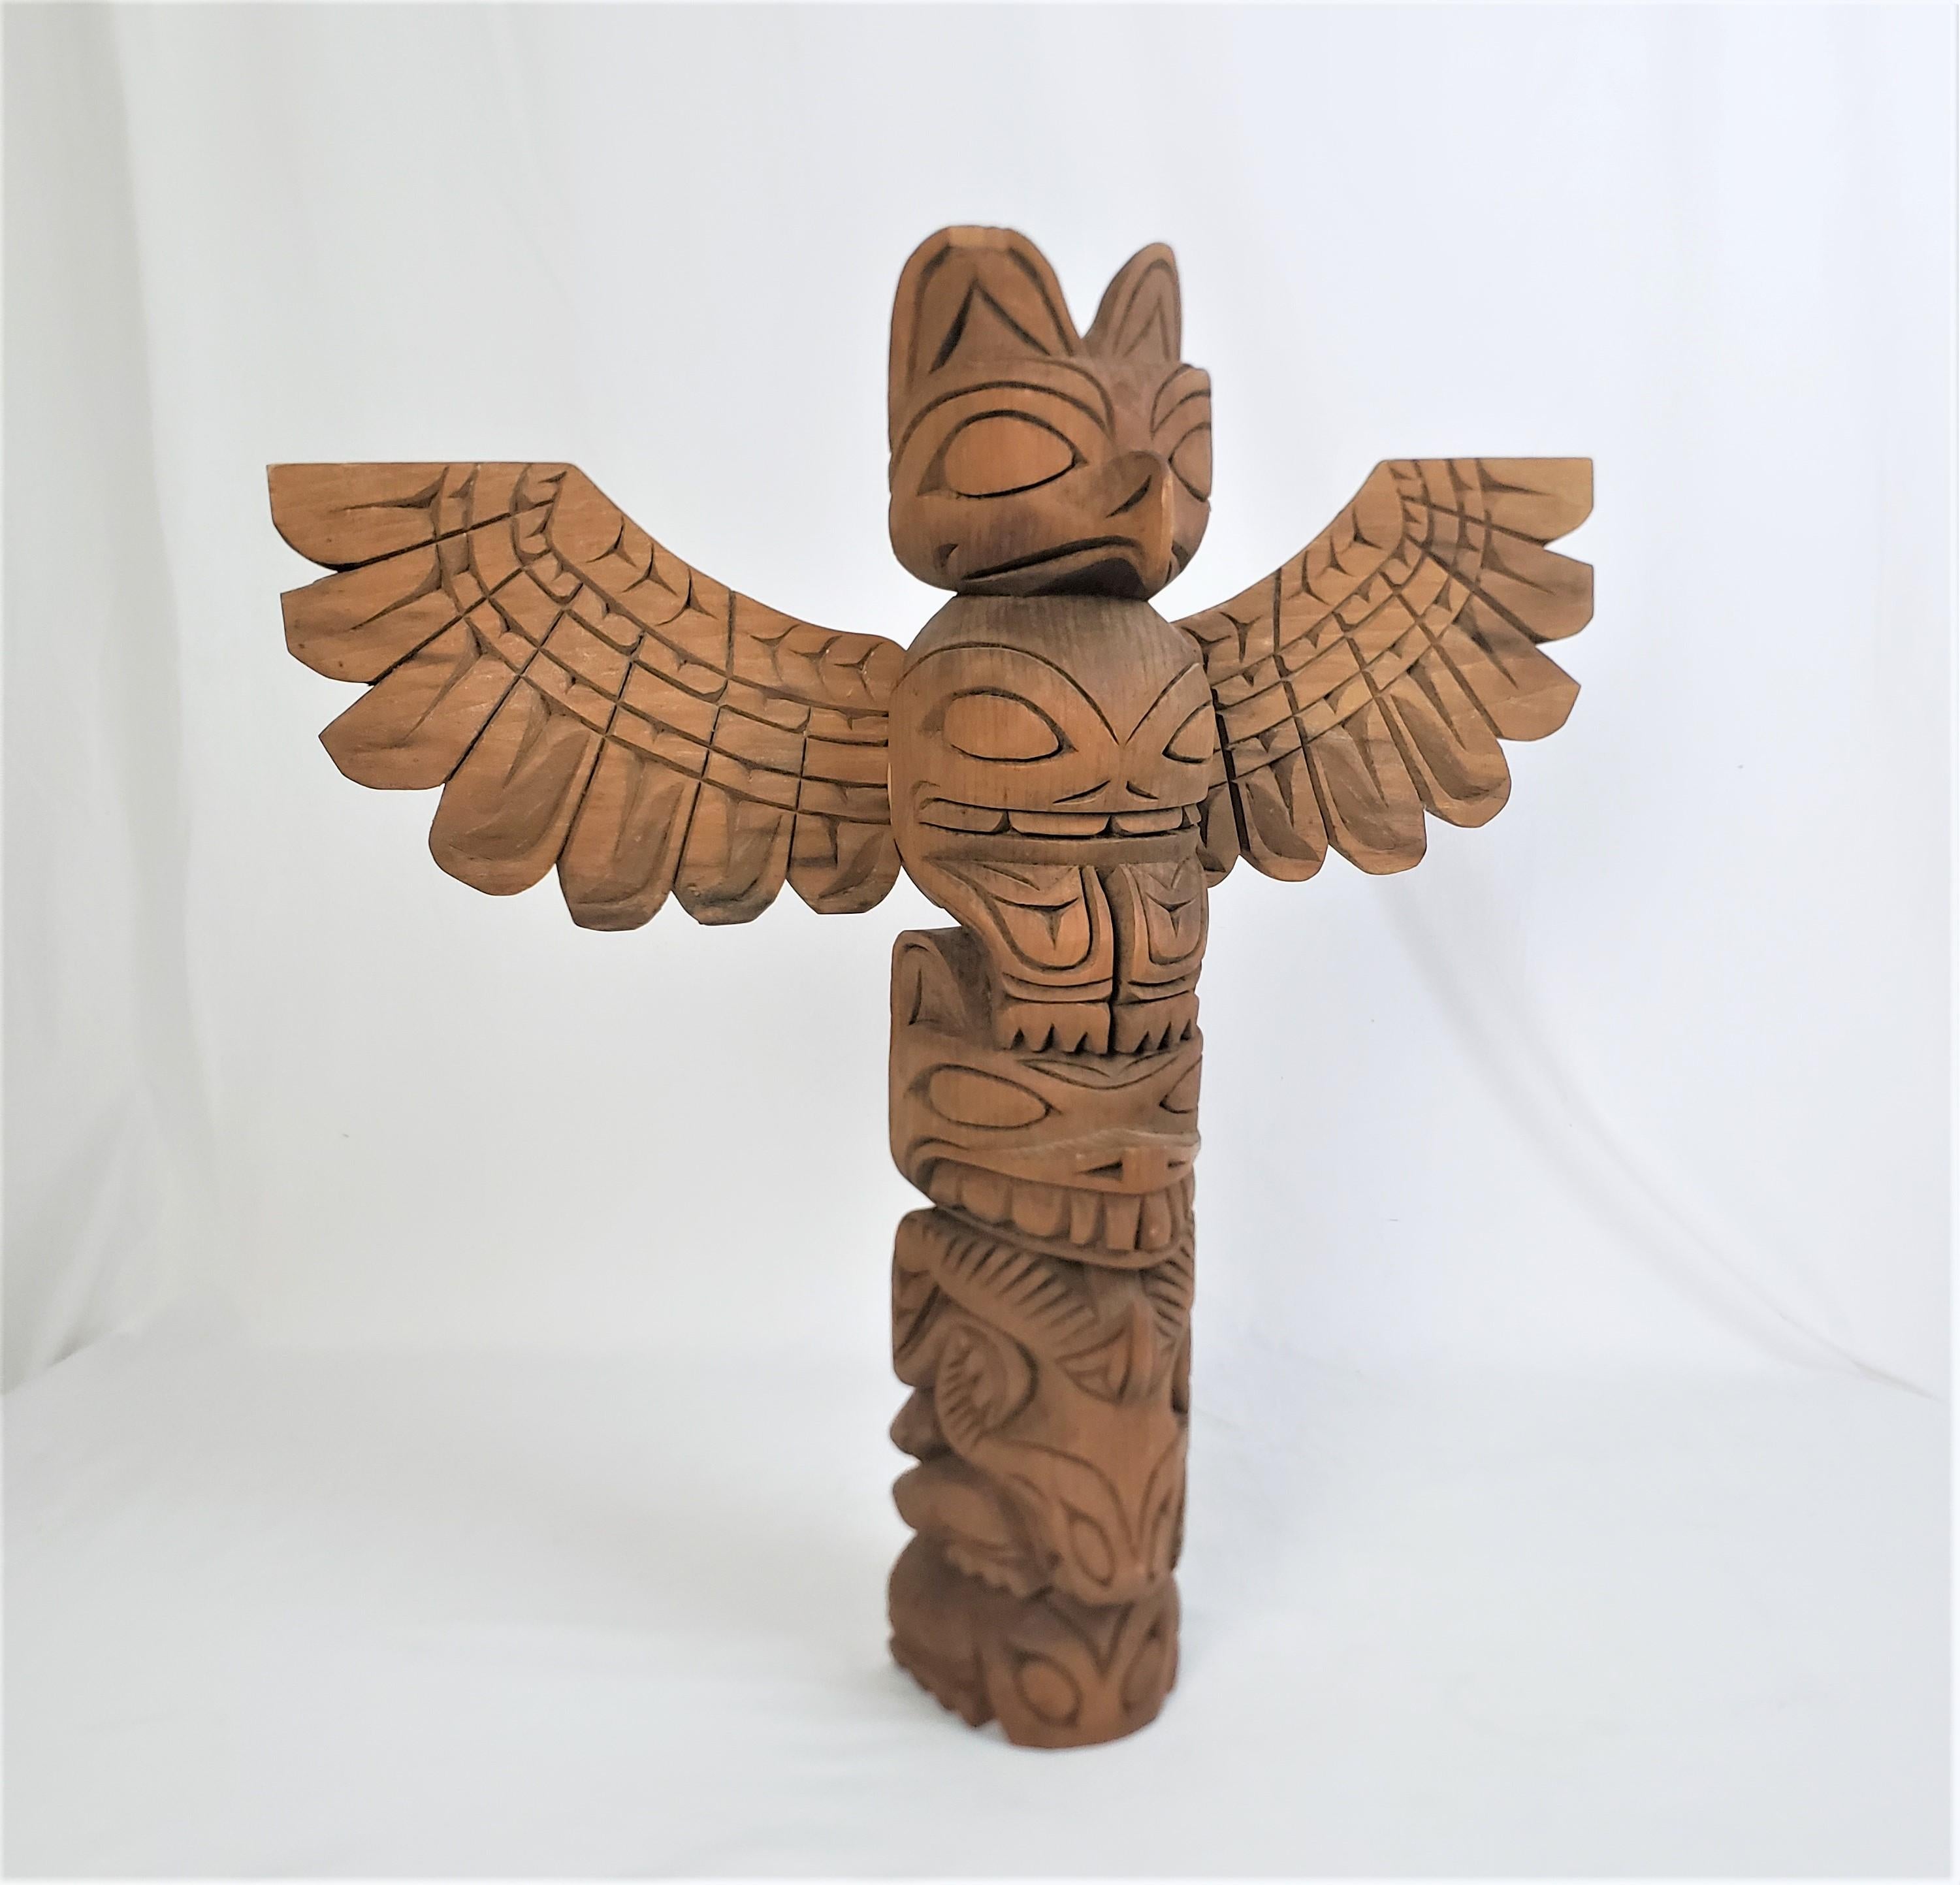 Dieser Totempfahl der amerikanischen Ureinwohner wurde um 1960 von dem bekannten amerikanischen Meisterschnitzer John T. Williams in seinem typischen Haida-Stil der Westküste angefertigt. Die Skulptur ist aus Zedernholz gefertigt und hat